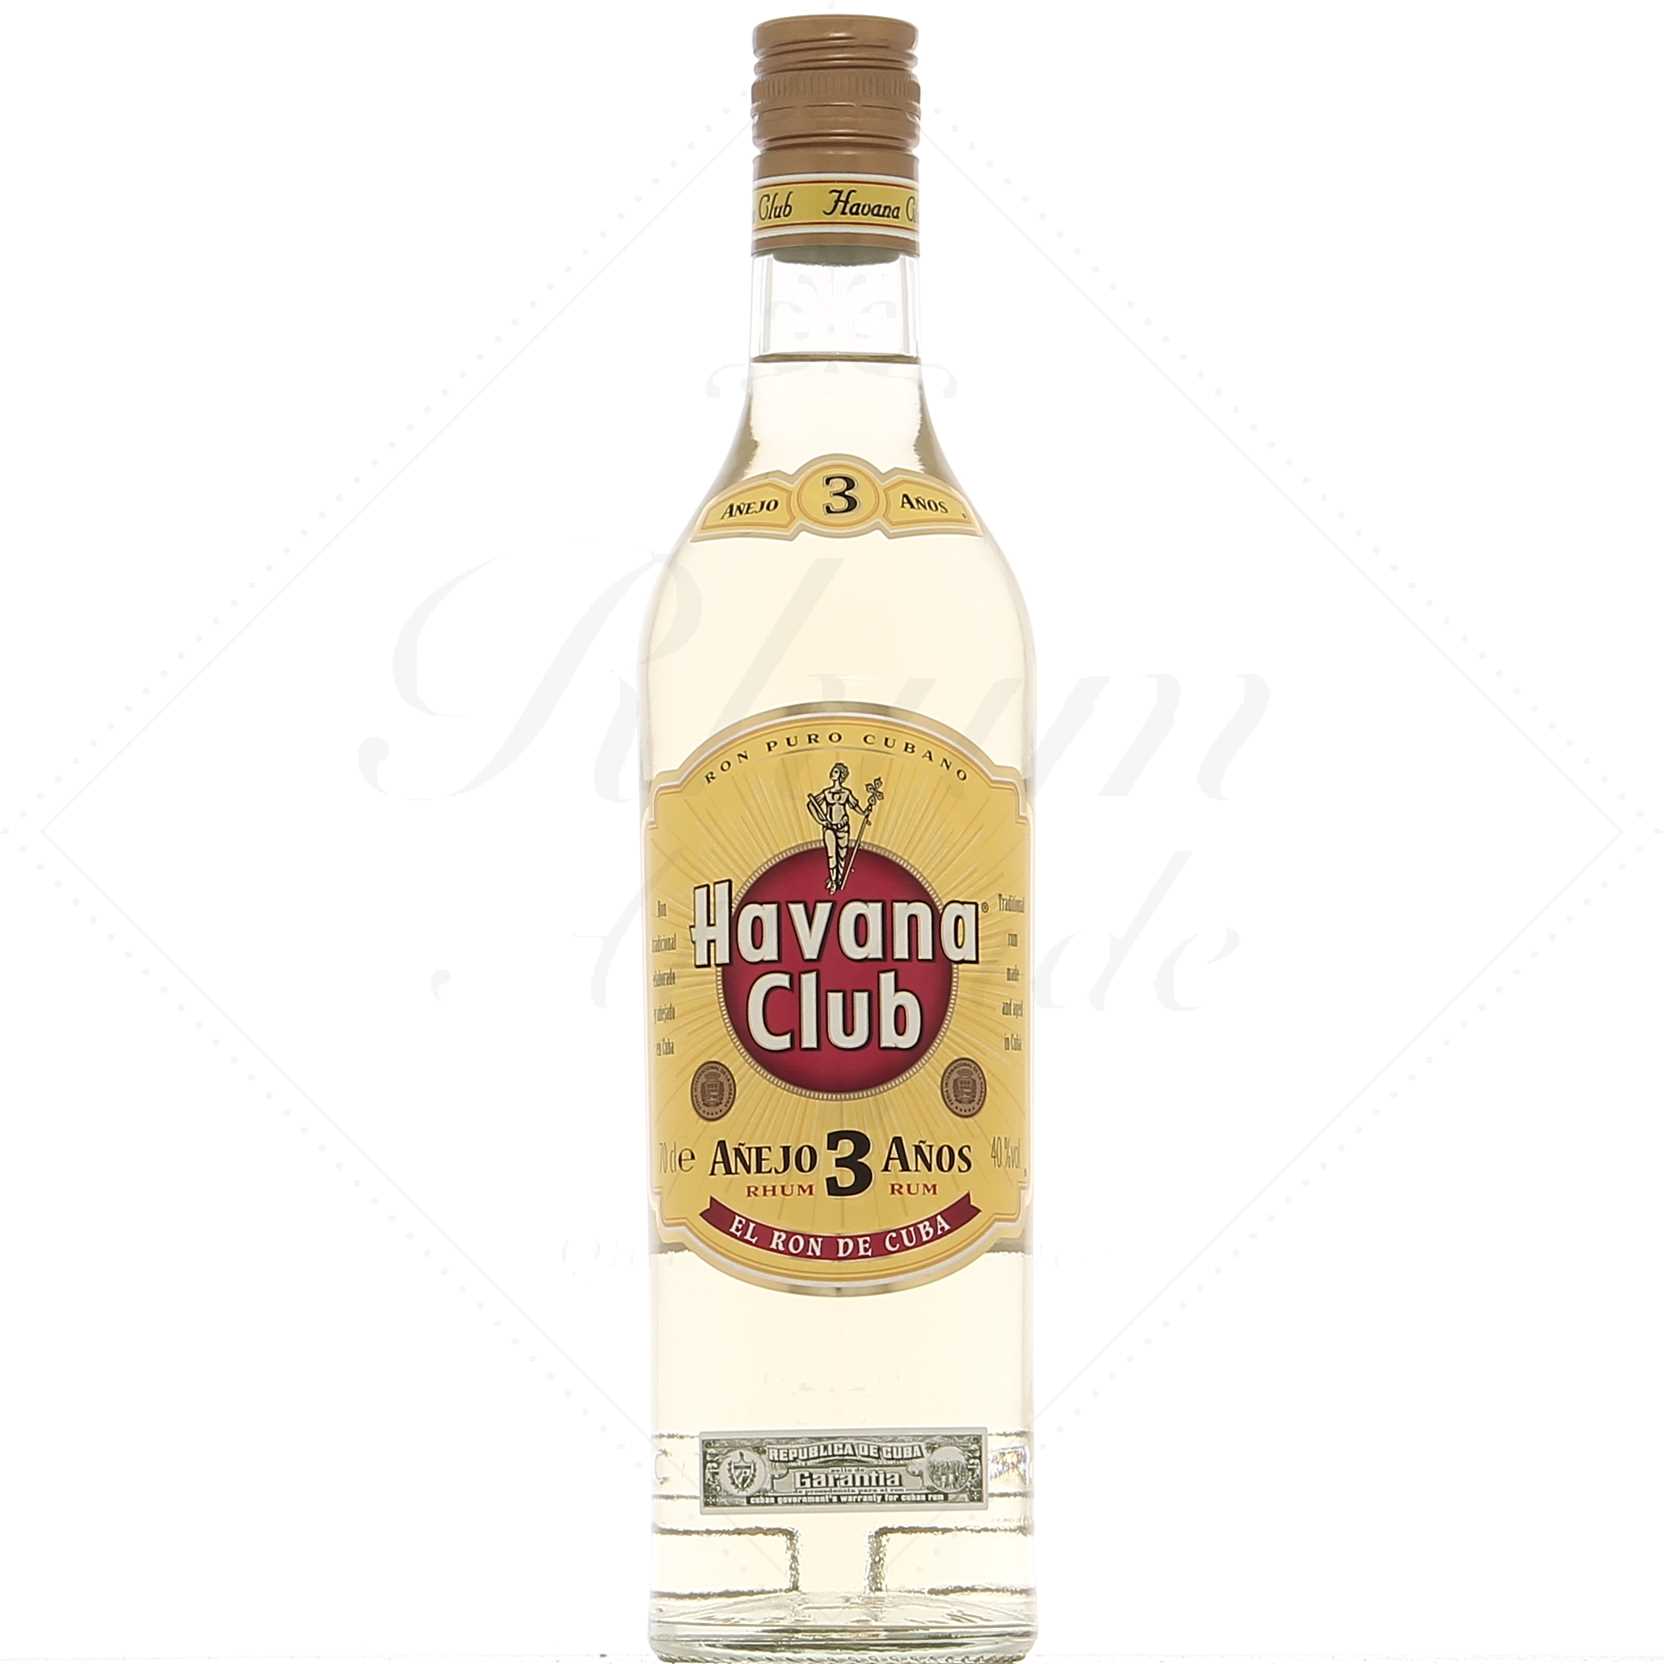 Havana Club white 3 years 37.5° - Rhum Attitude